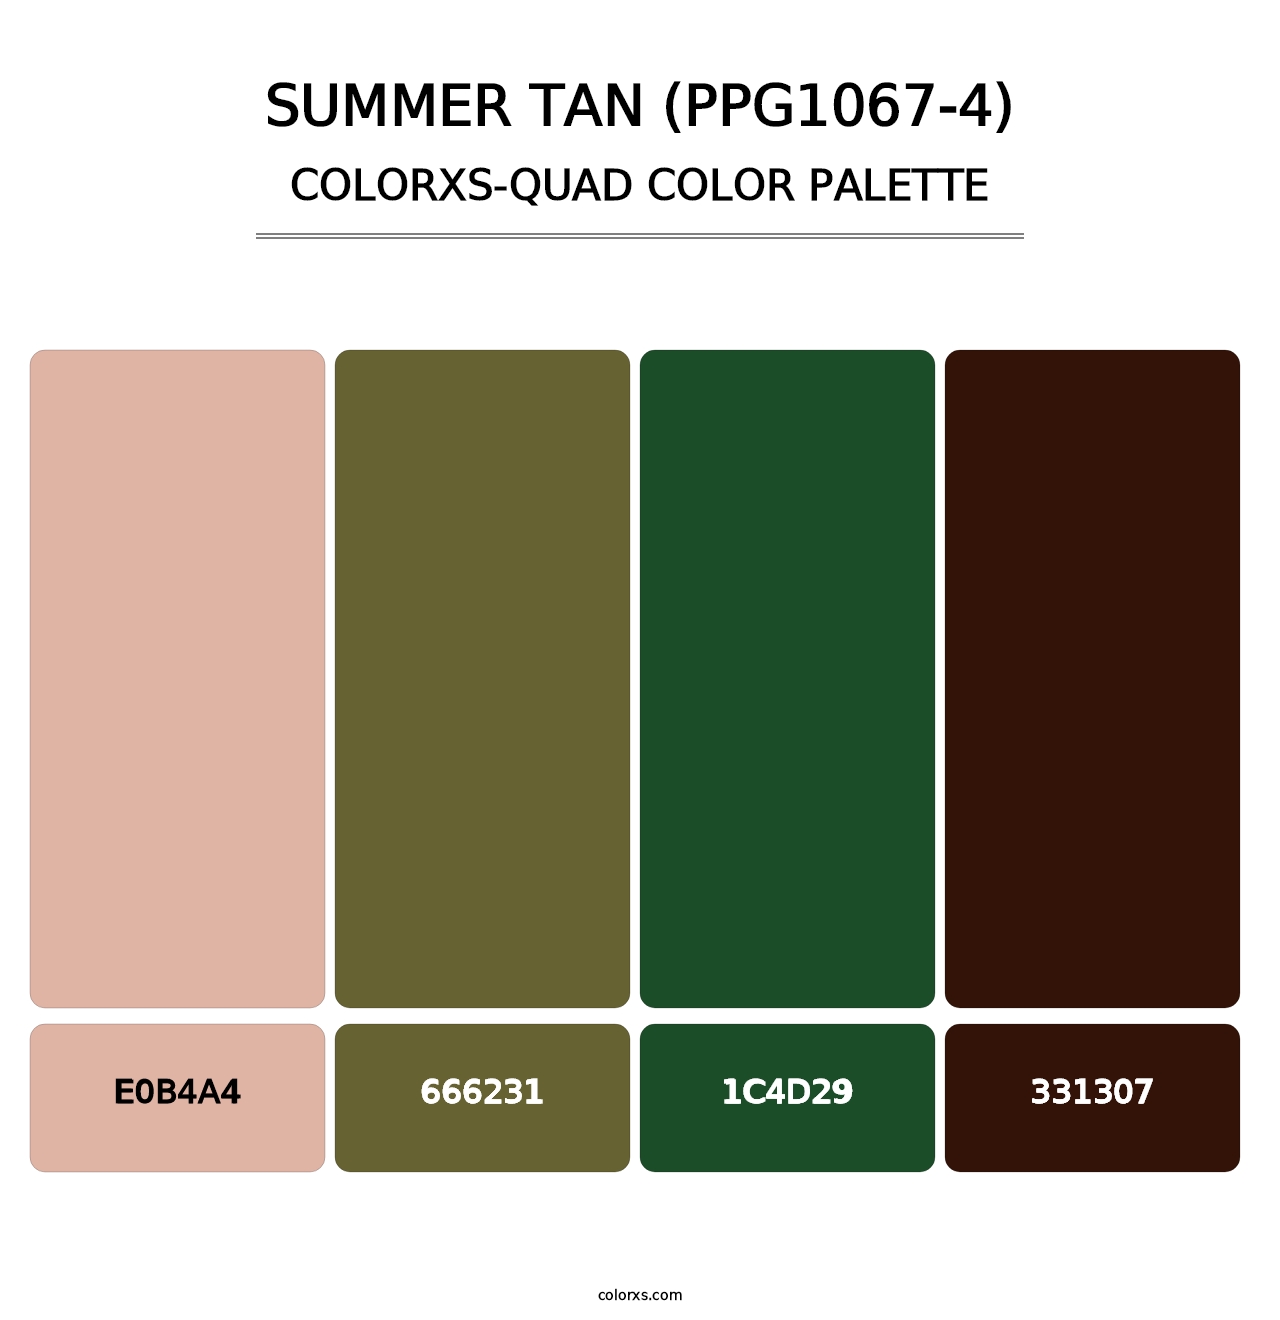 Summer Tan (PPG1067-4) - Colorxs Quad Palette